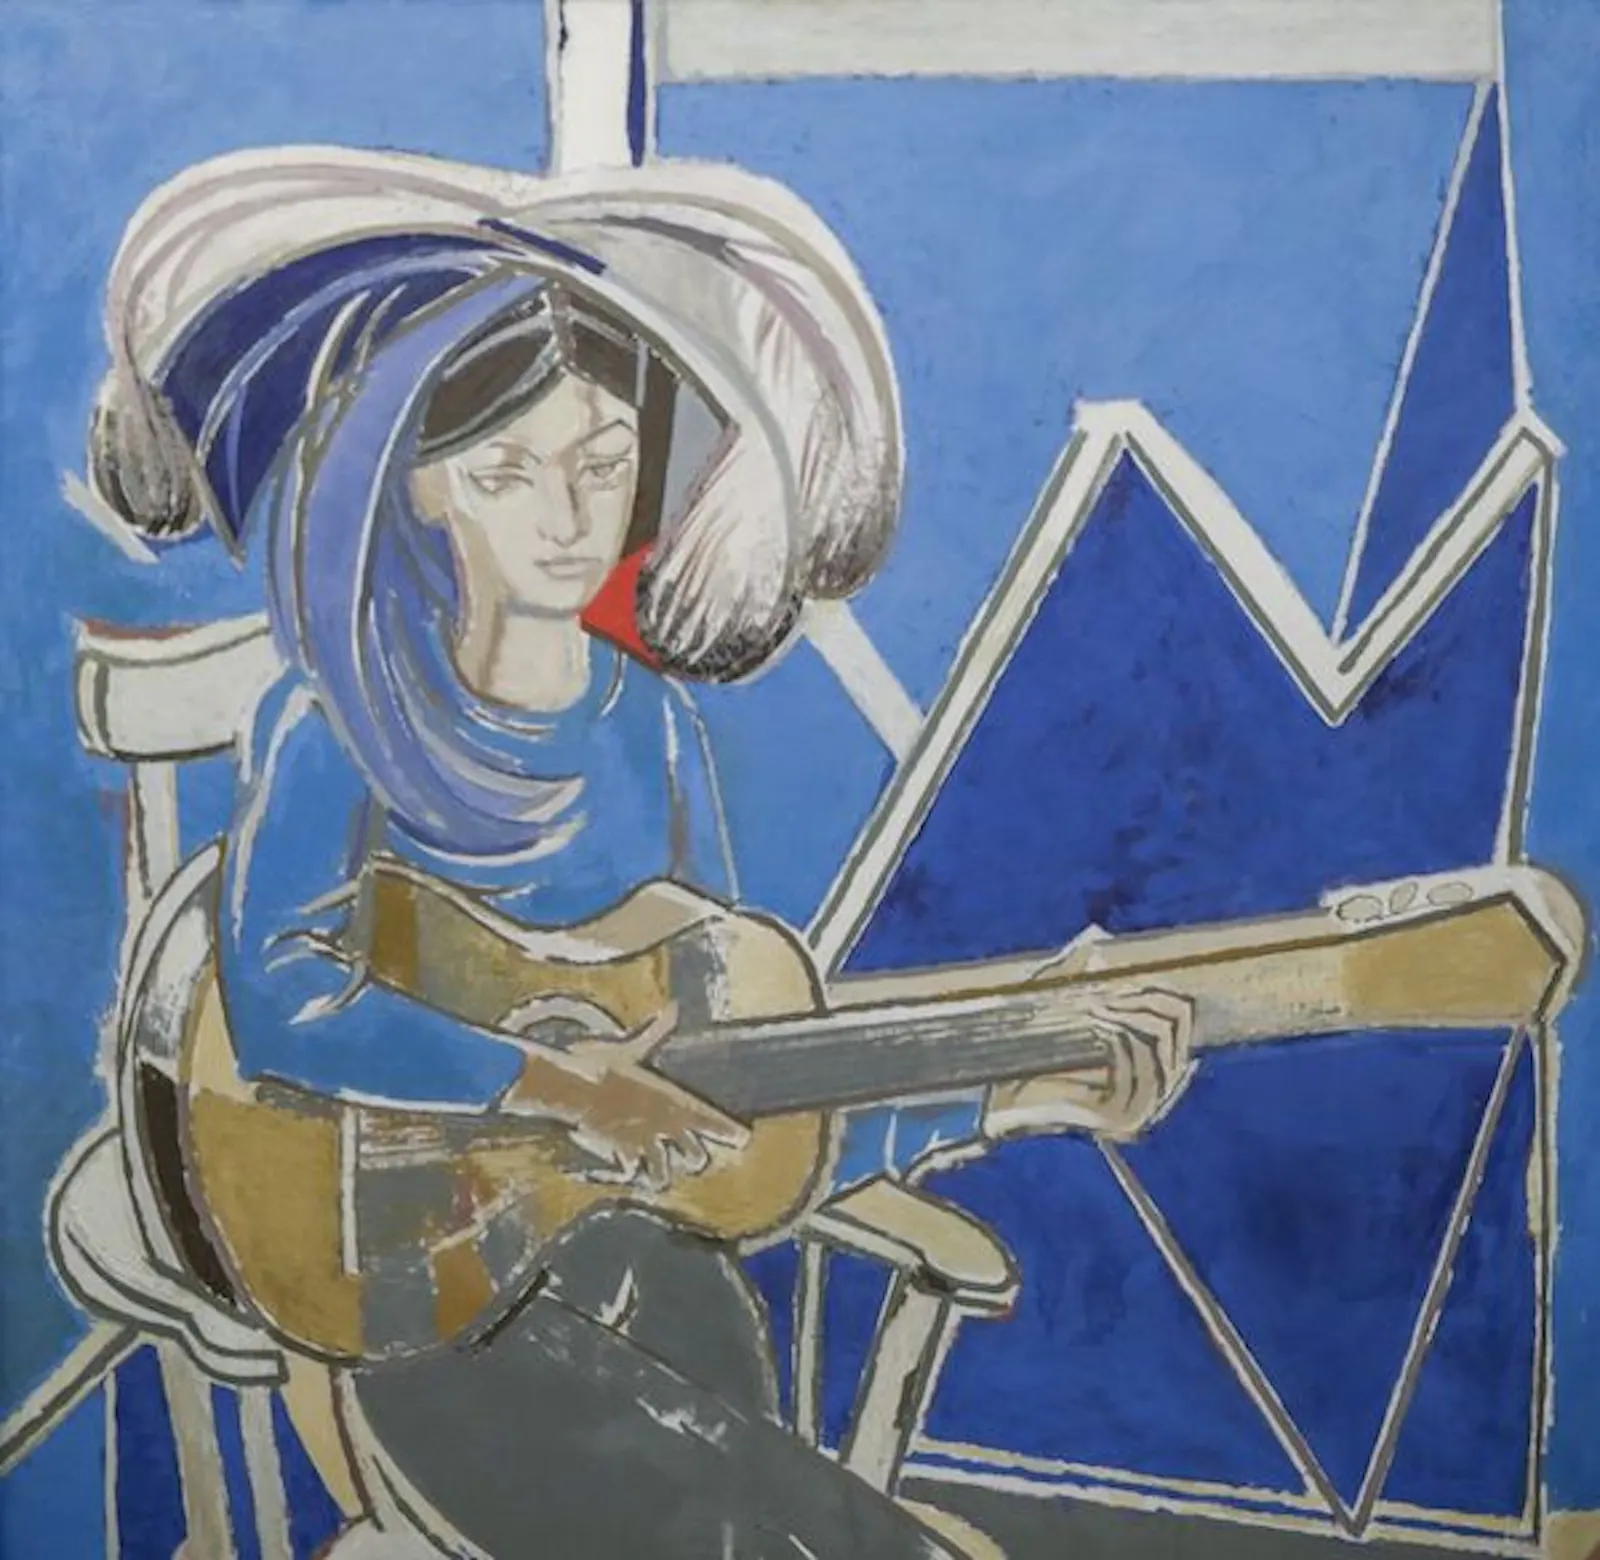 Una muchacha sentada en una silla toca la guitarra delante de un fondo con azules.